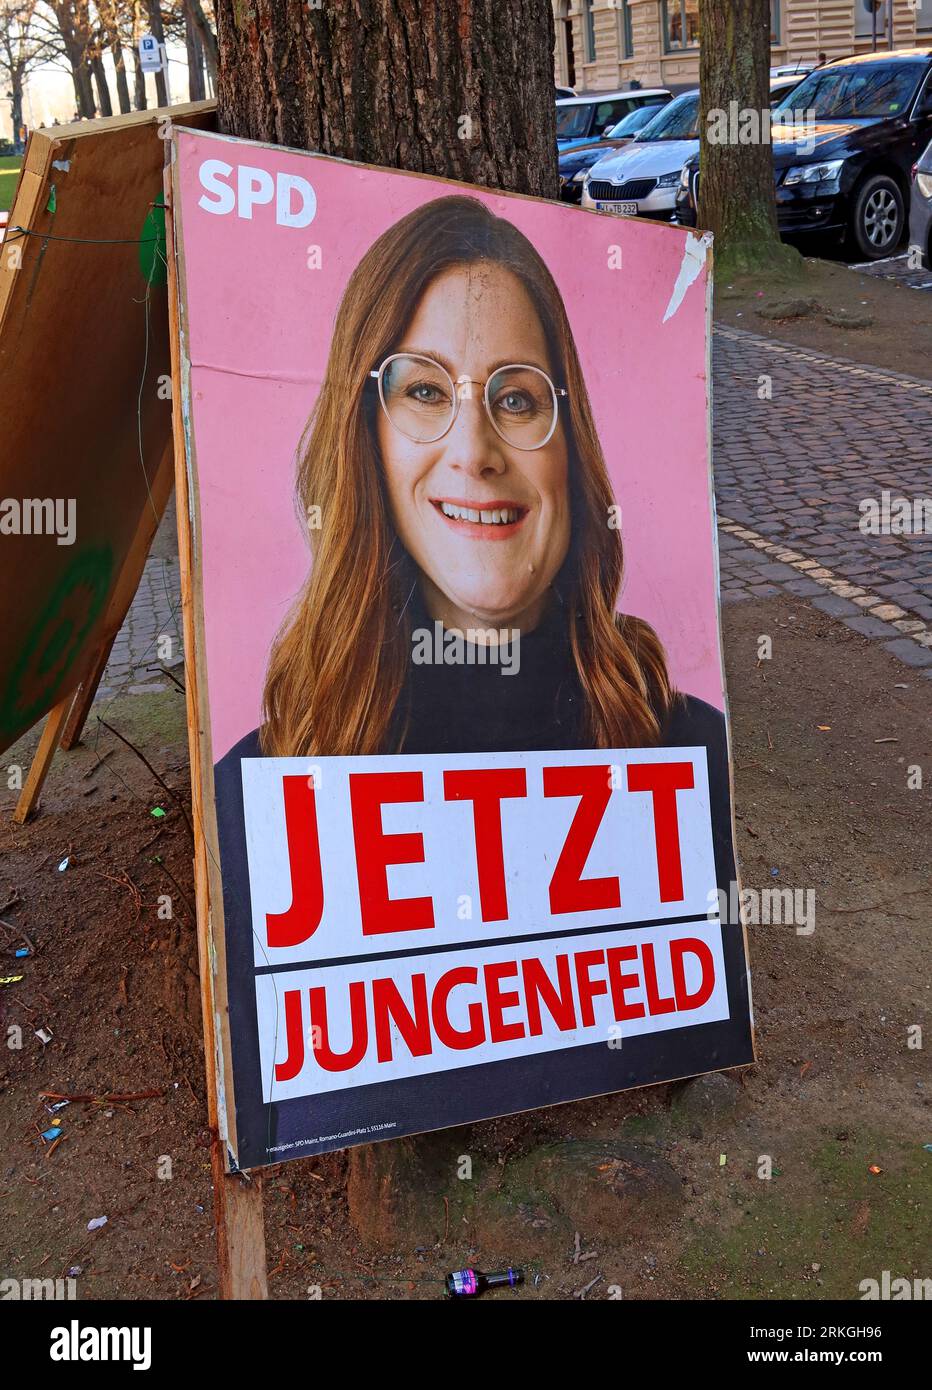 Maintenant - Jetzt Jungenfeld Mainz politicien de la ville, affiche du candidat politique du SPD - Mombacher Strasse. 61, 55122 Mayence, Rhénanie-Palatinat, Allemagne Banque D'Images